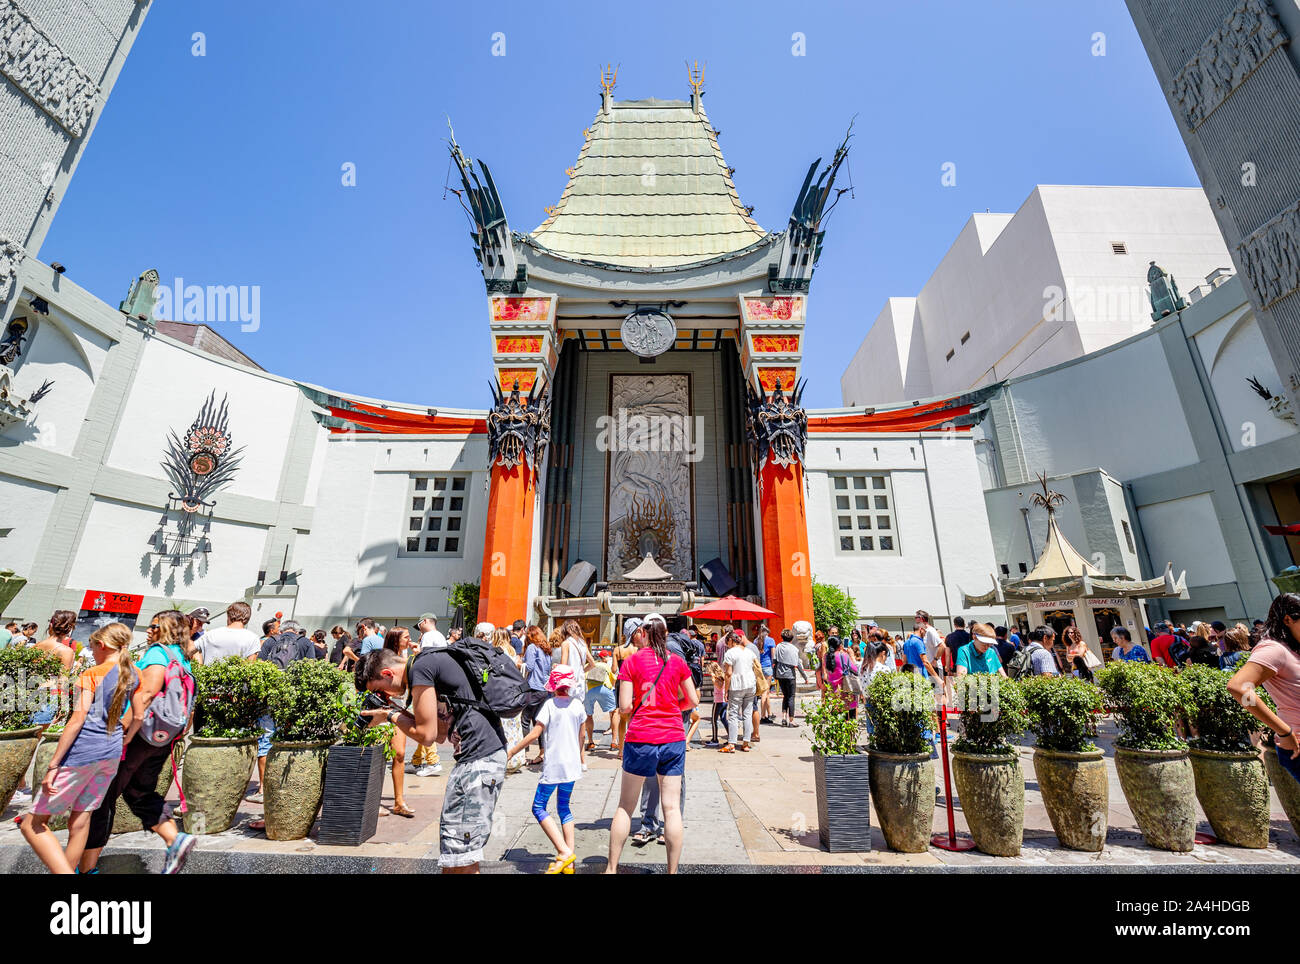 TCL Chinese Theatre in Hollywood, Kalifornien. Ursprünglich Grauman's Chinese Theater, die für ihre berühmten Celebrity footprints bekannt. Stockfoto